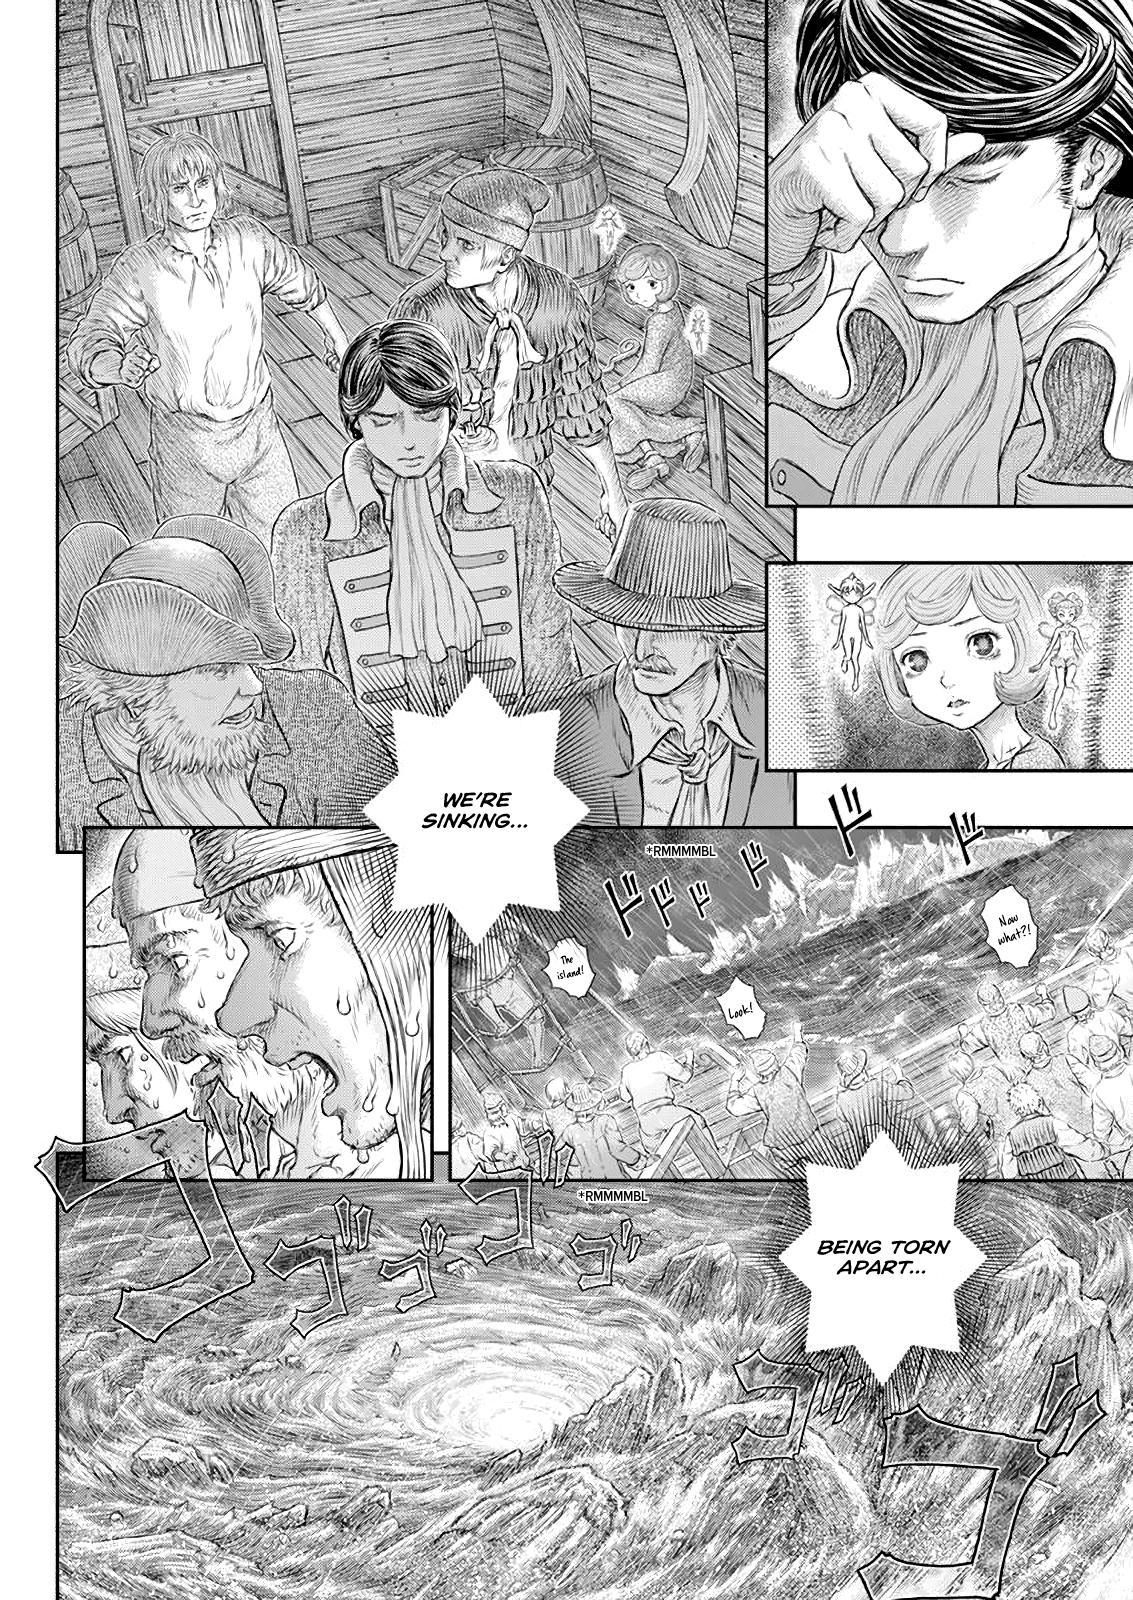 Berserk Manga Chapter 371 image 09